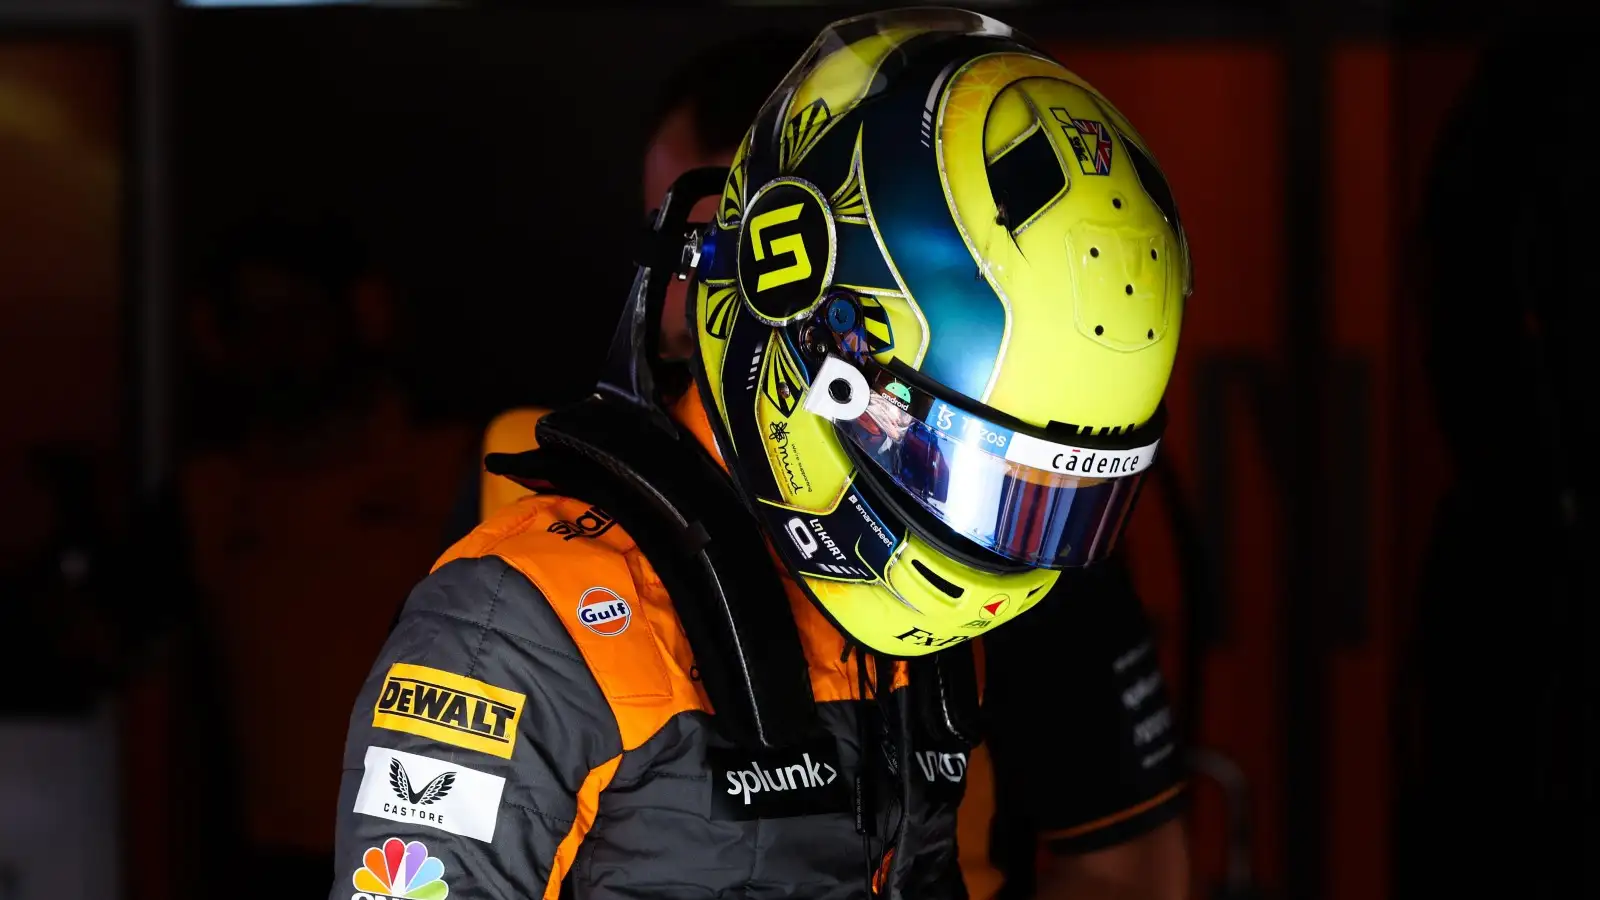 Lando Norris wears his race gear in the McLaren garage. Canada, June 2022.